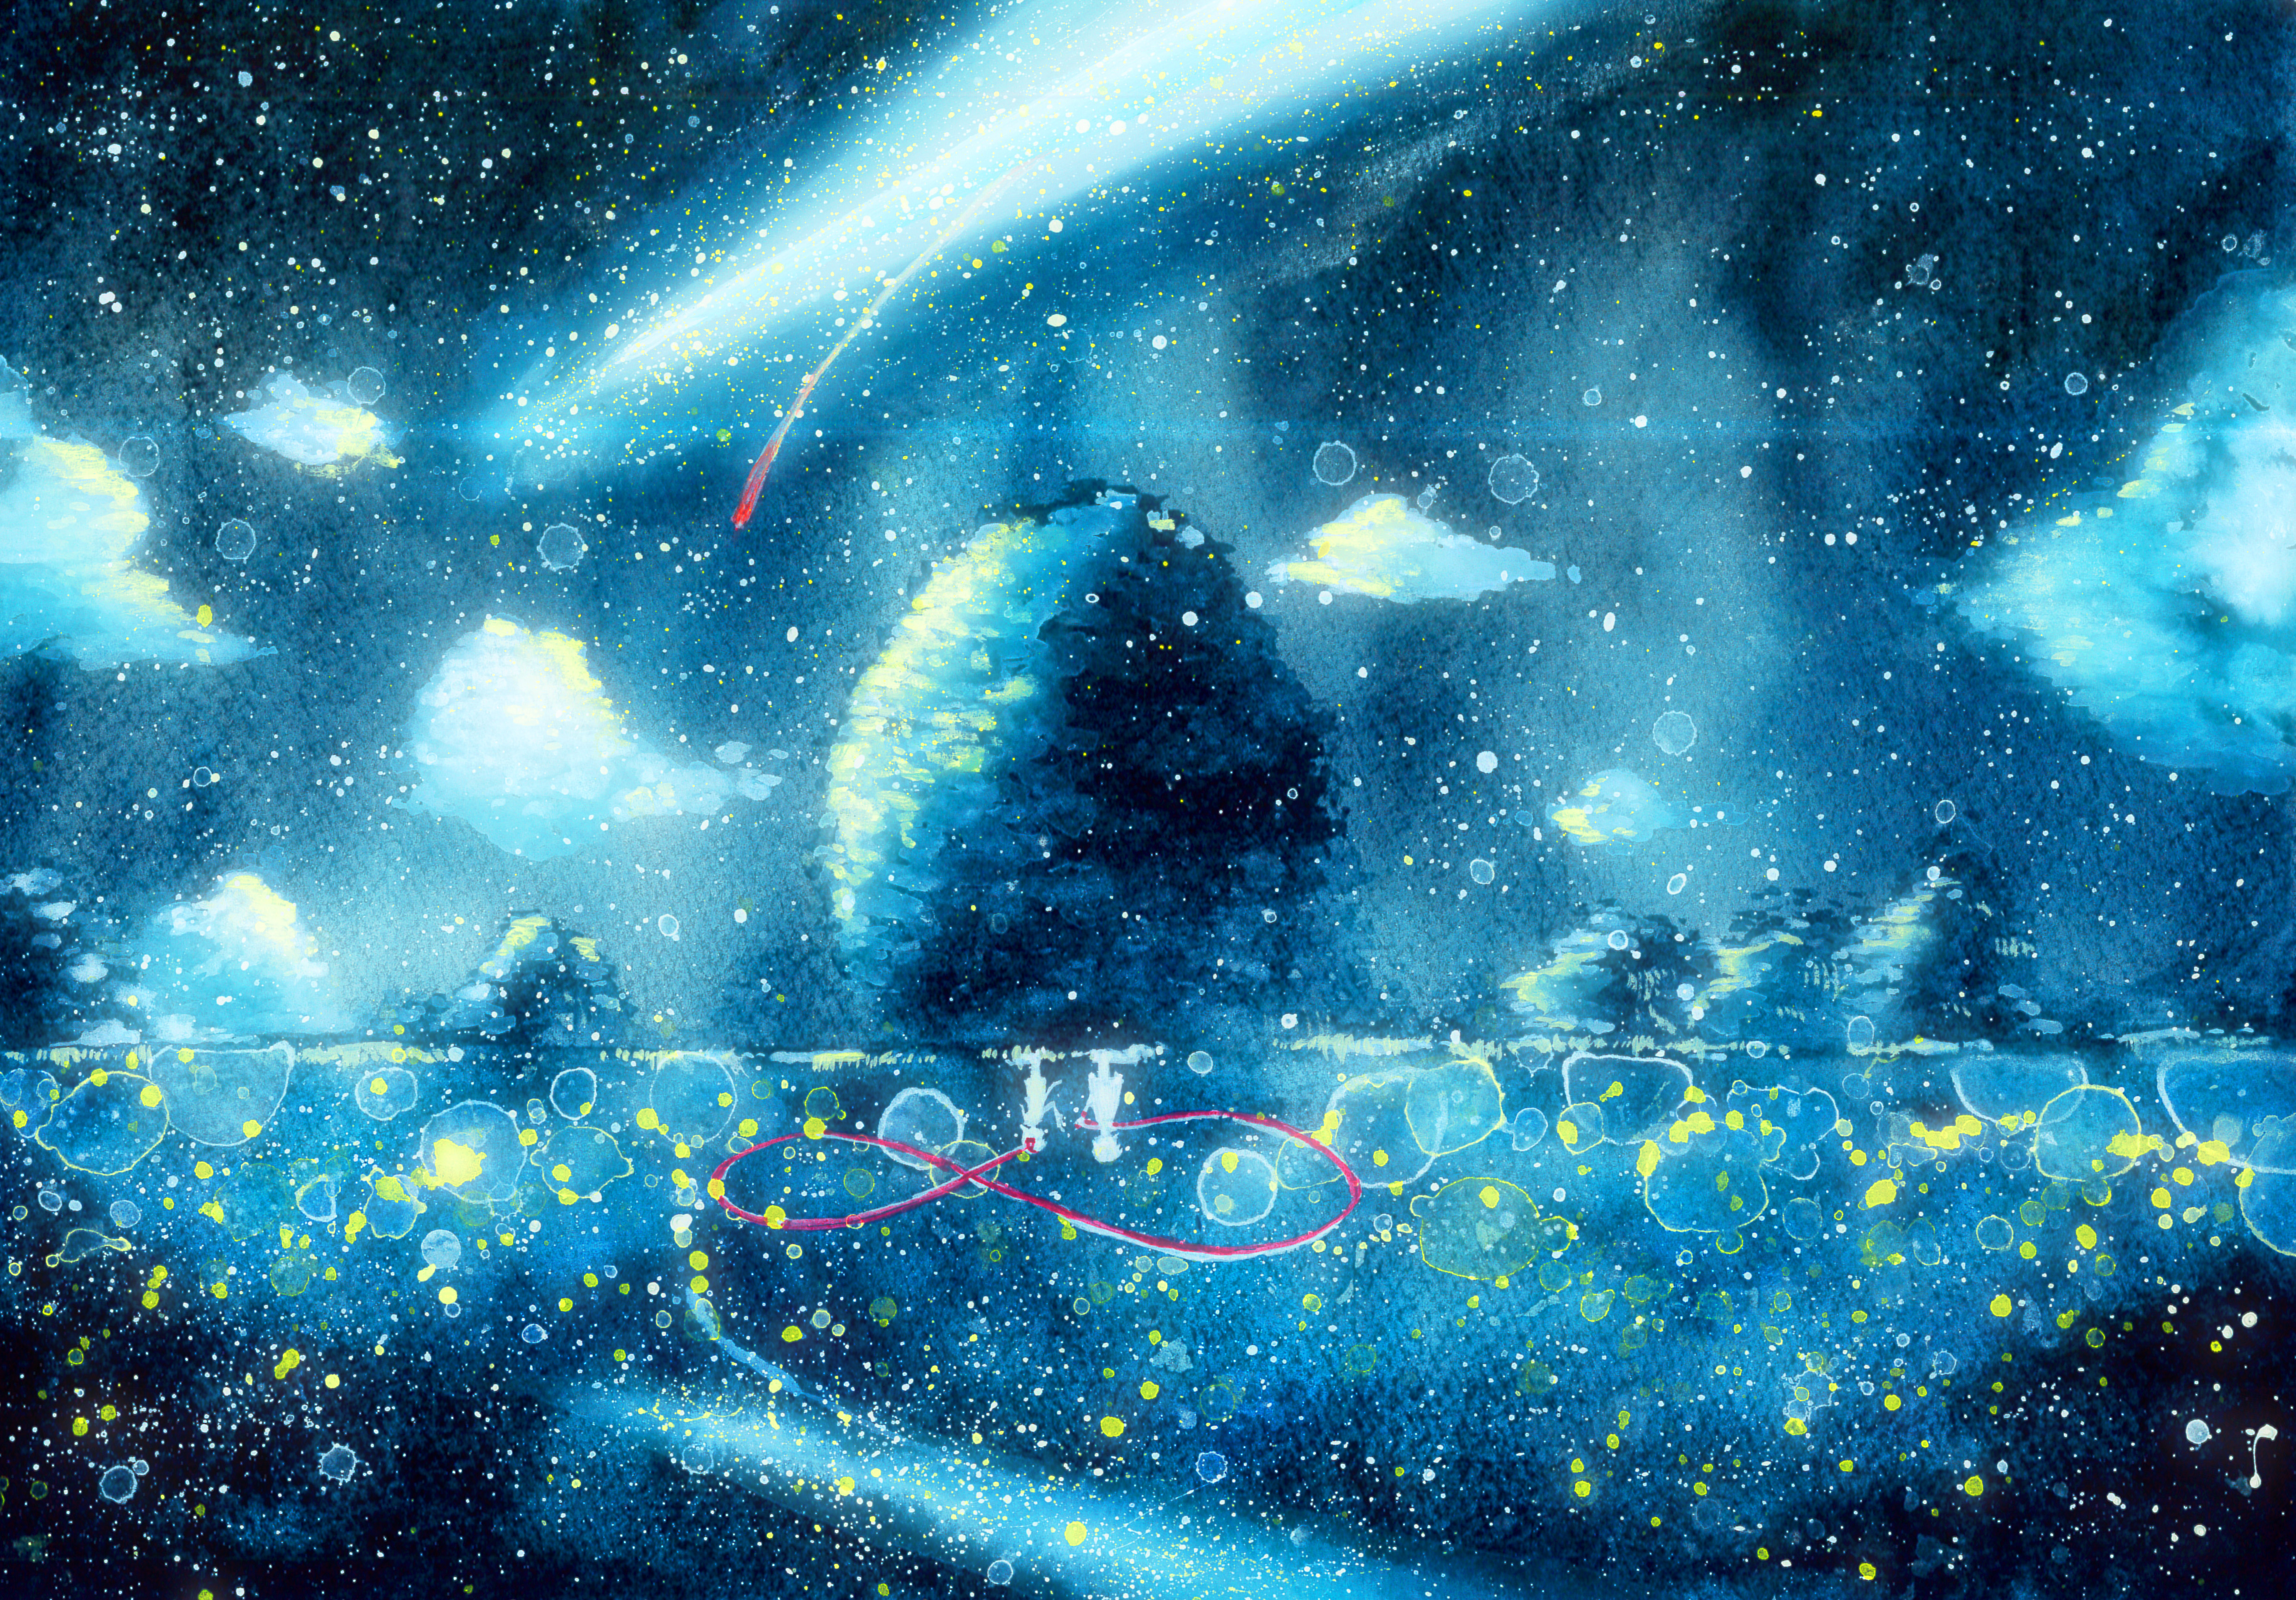 kimi no na wa tapete,himmel,blau,atmosphäre,astronomisches objekt,weltraum